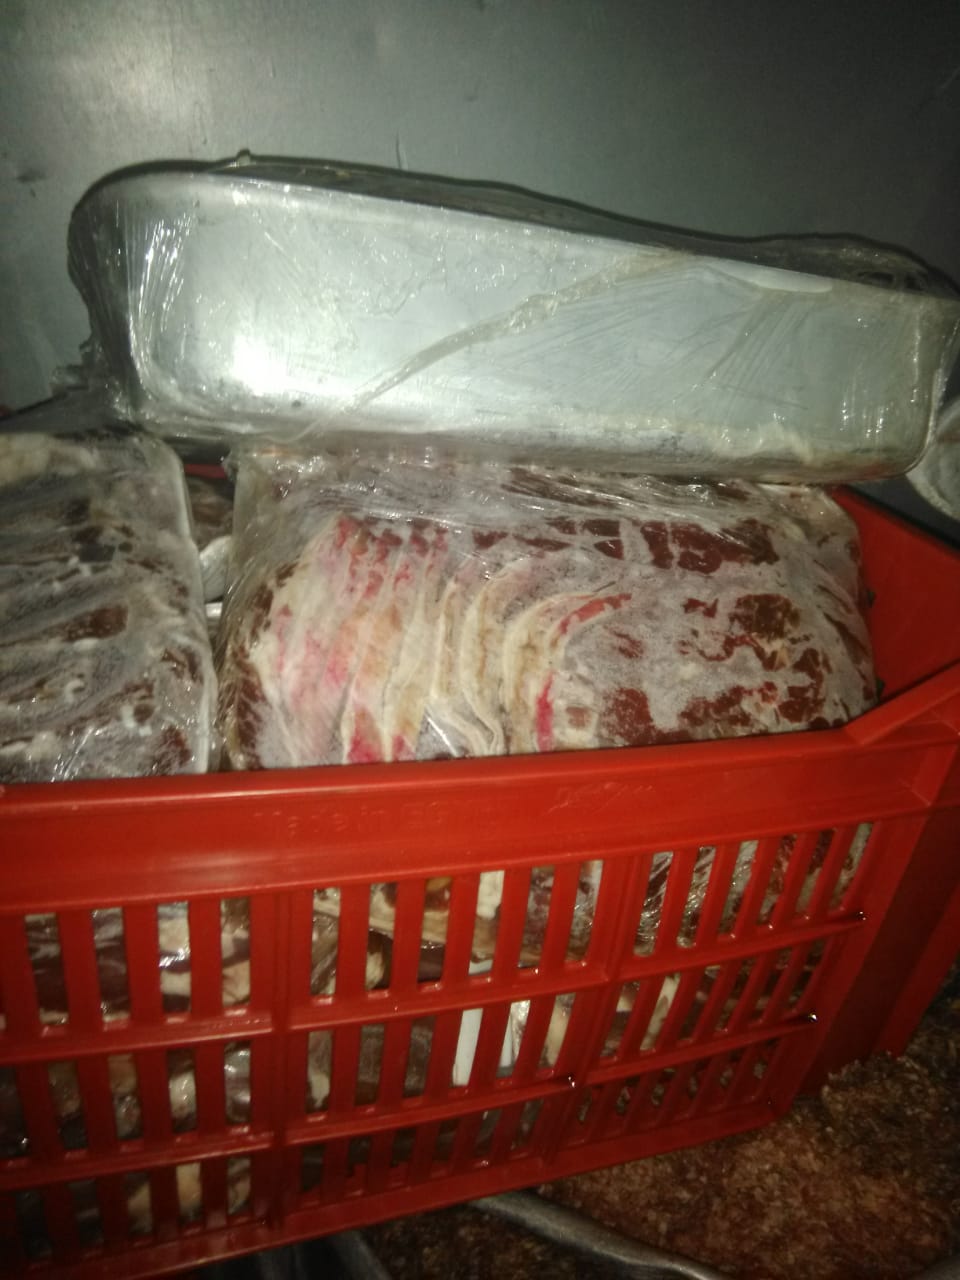 ضبط أغذية غير صالحة للاستهلاك الآدمي في بعض المطاعم بمدينة مرسى مطروح  (4)